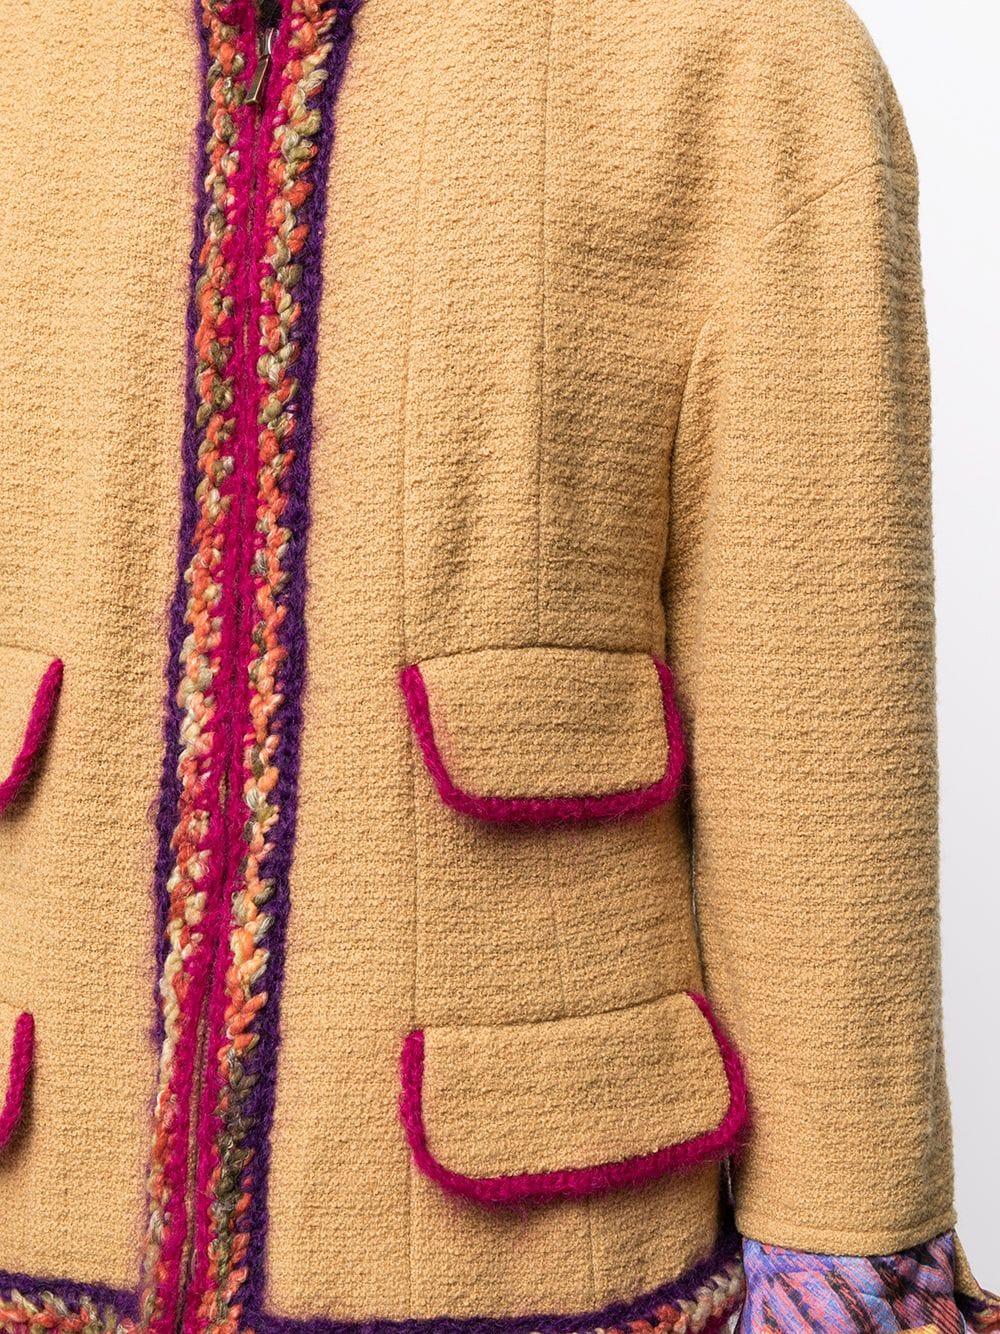 Dieser raffinierte Rock aus der Herbst/Winter-Supermarkt-Kollektion 2014 von Chanel Karl Lagerfeld wurde in Frankreich sorgfältig aus senffarbenem Tweed gefertigt und verleiht dem charakteristischen Tweed-Anzug der Marke ein modernes Update. Die